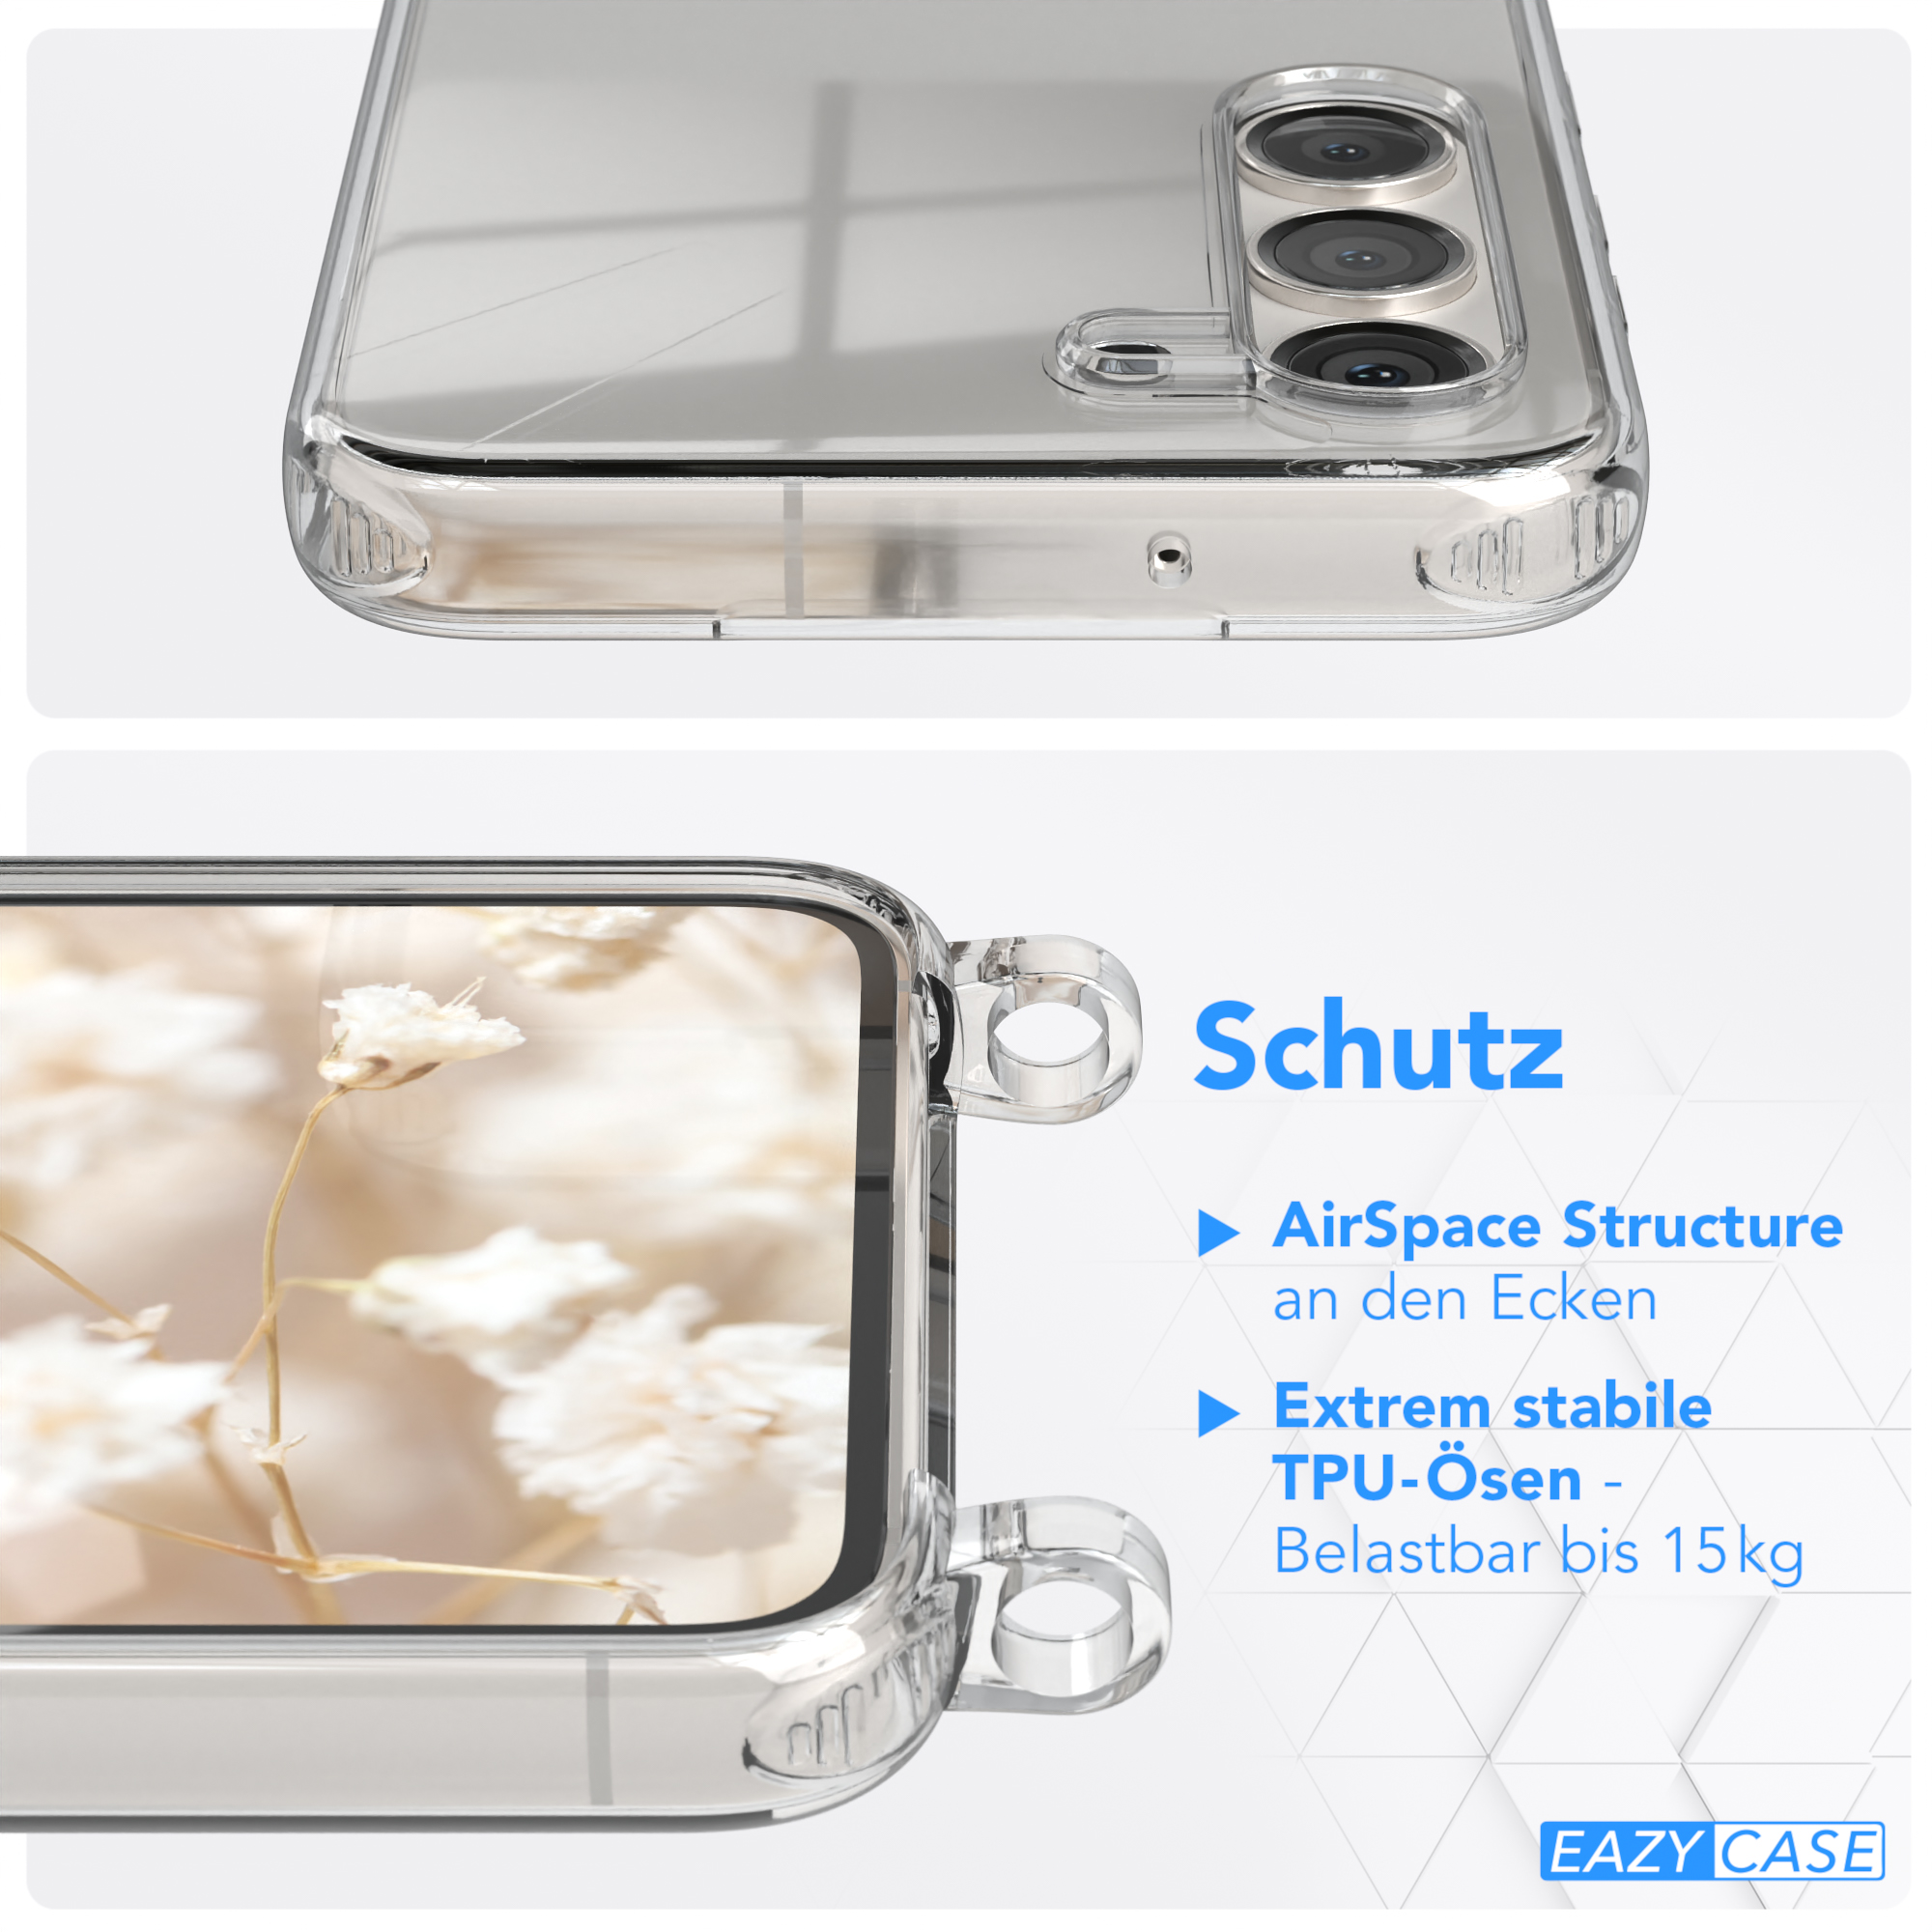 Transparente Umhängetasche, / Samsung, Rot Braun CASE Boho Style, Kordel Galaxy mit Handyhülle S23, EAZY